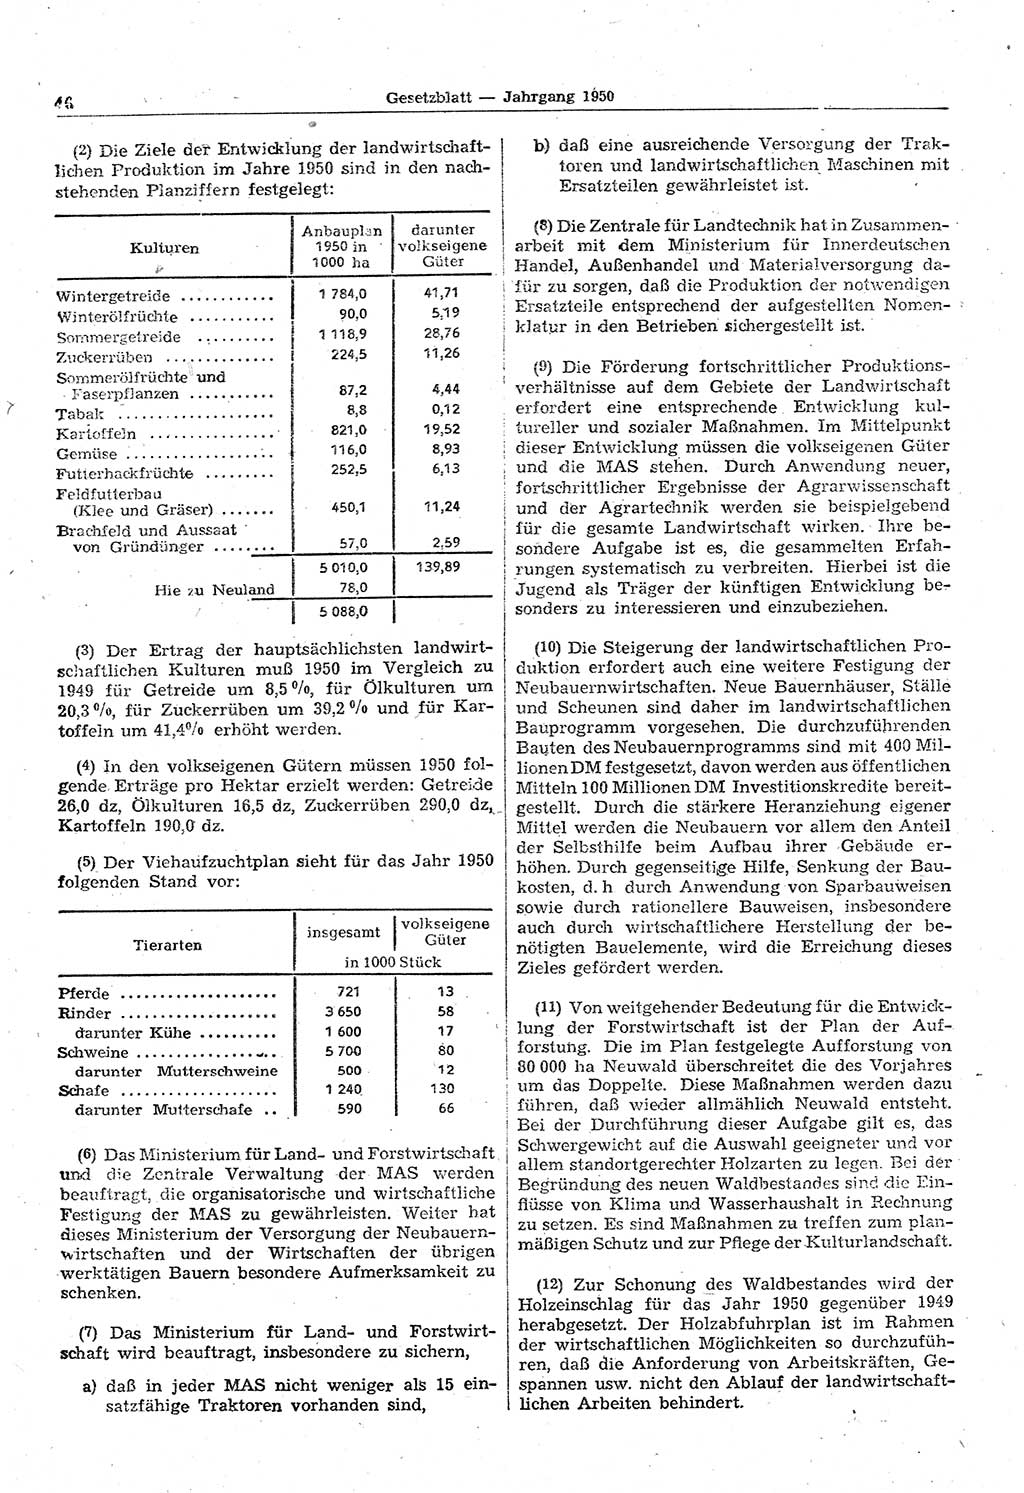 Gesetzblatt (GBl.) der Deutschen Demokratischen Republik (DDR) 1950, Seite 46 (GBl. DDR 1950, S. 46)